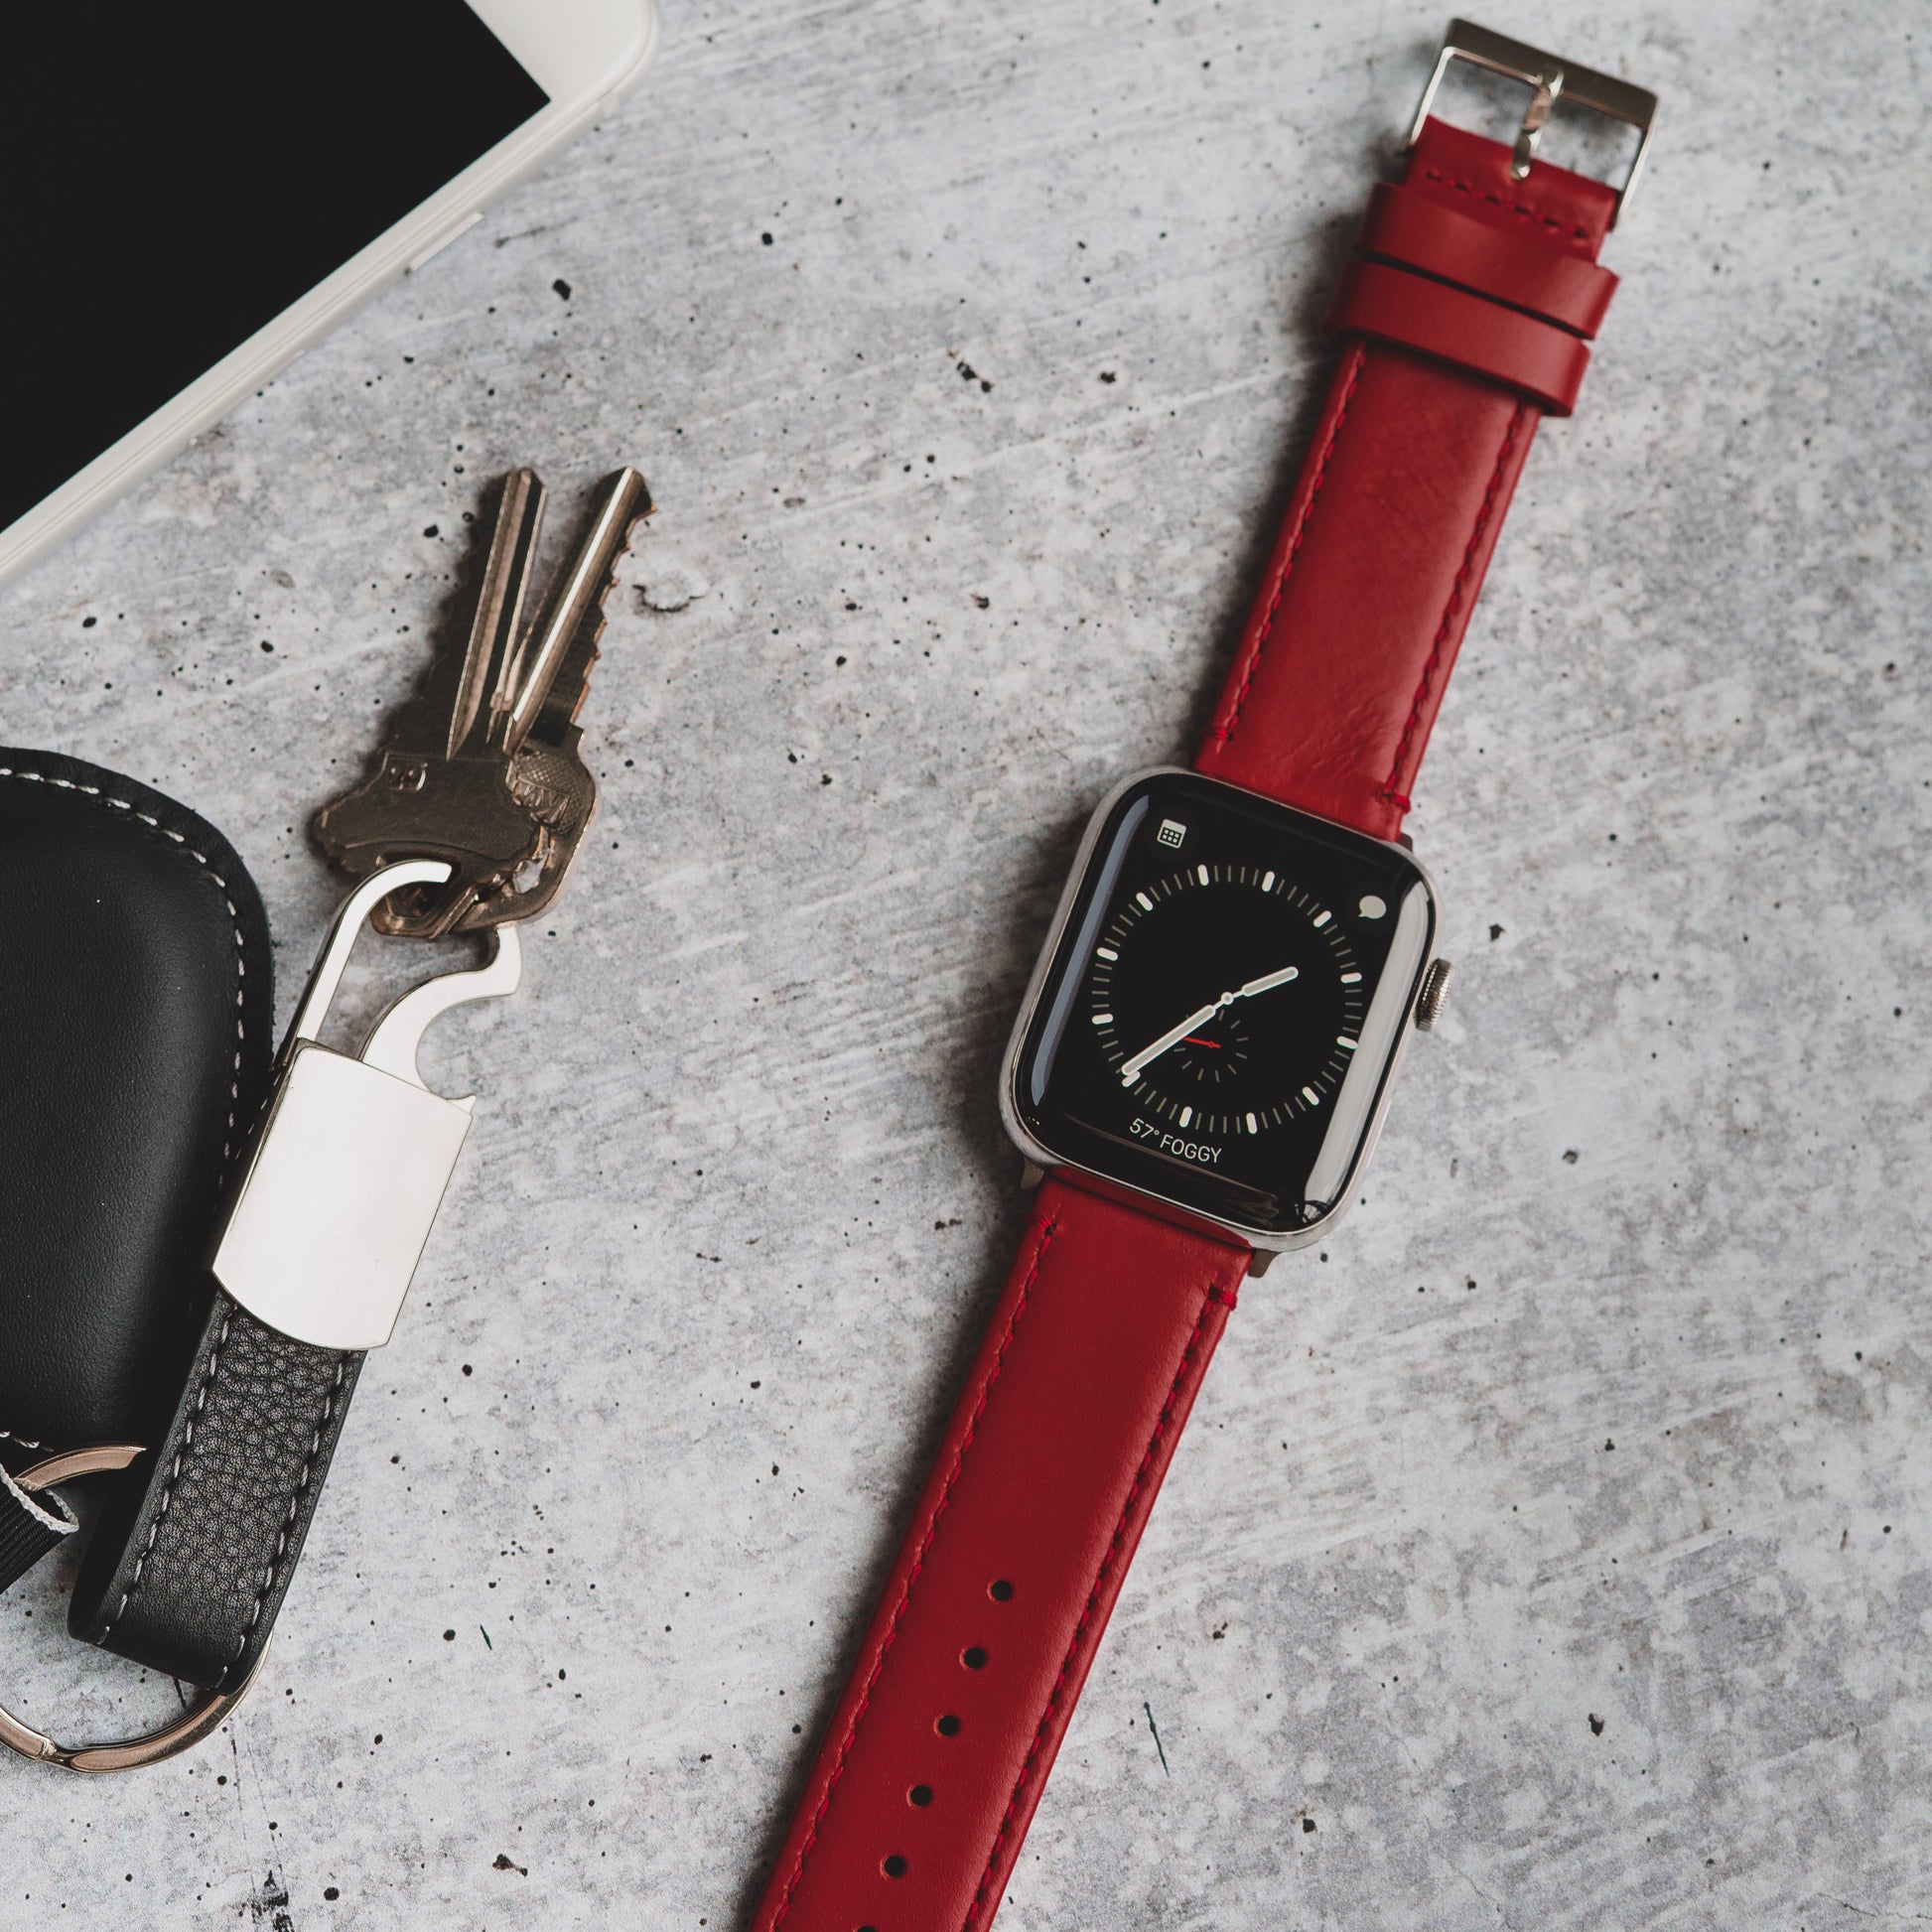 Handdn Red Calfskin Apple Watch Band – Waves Texture